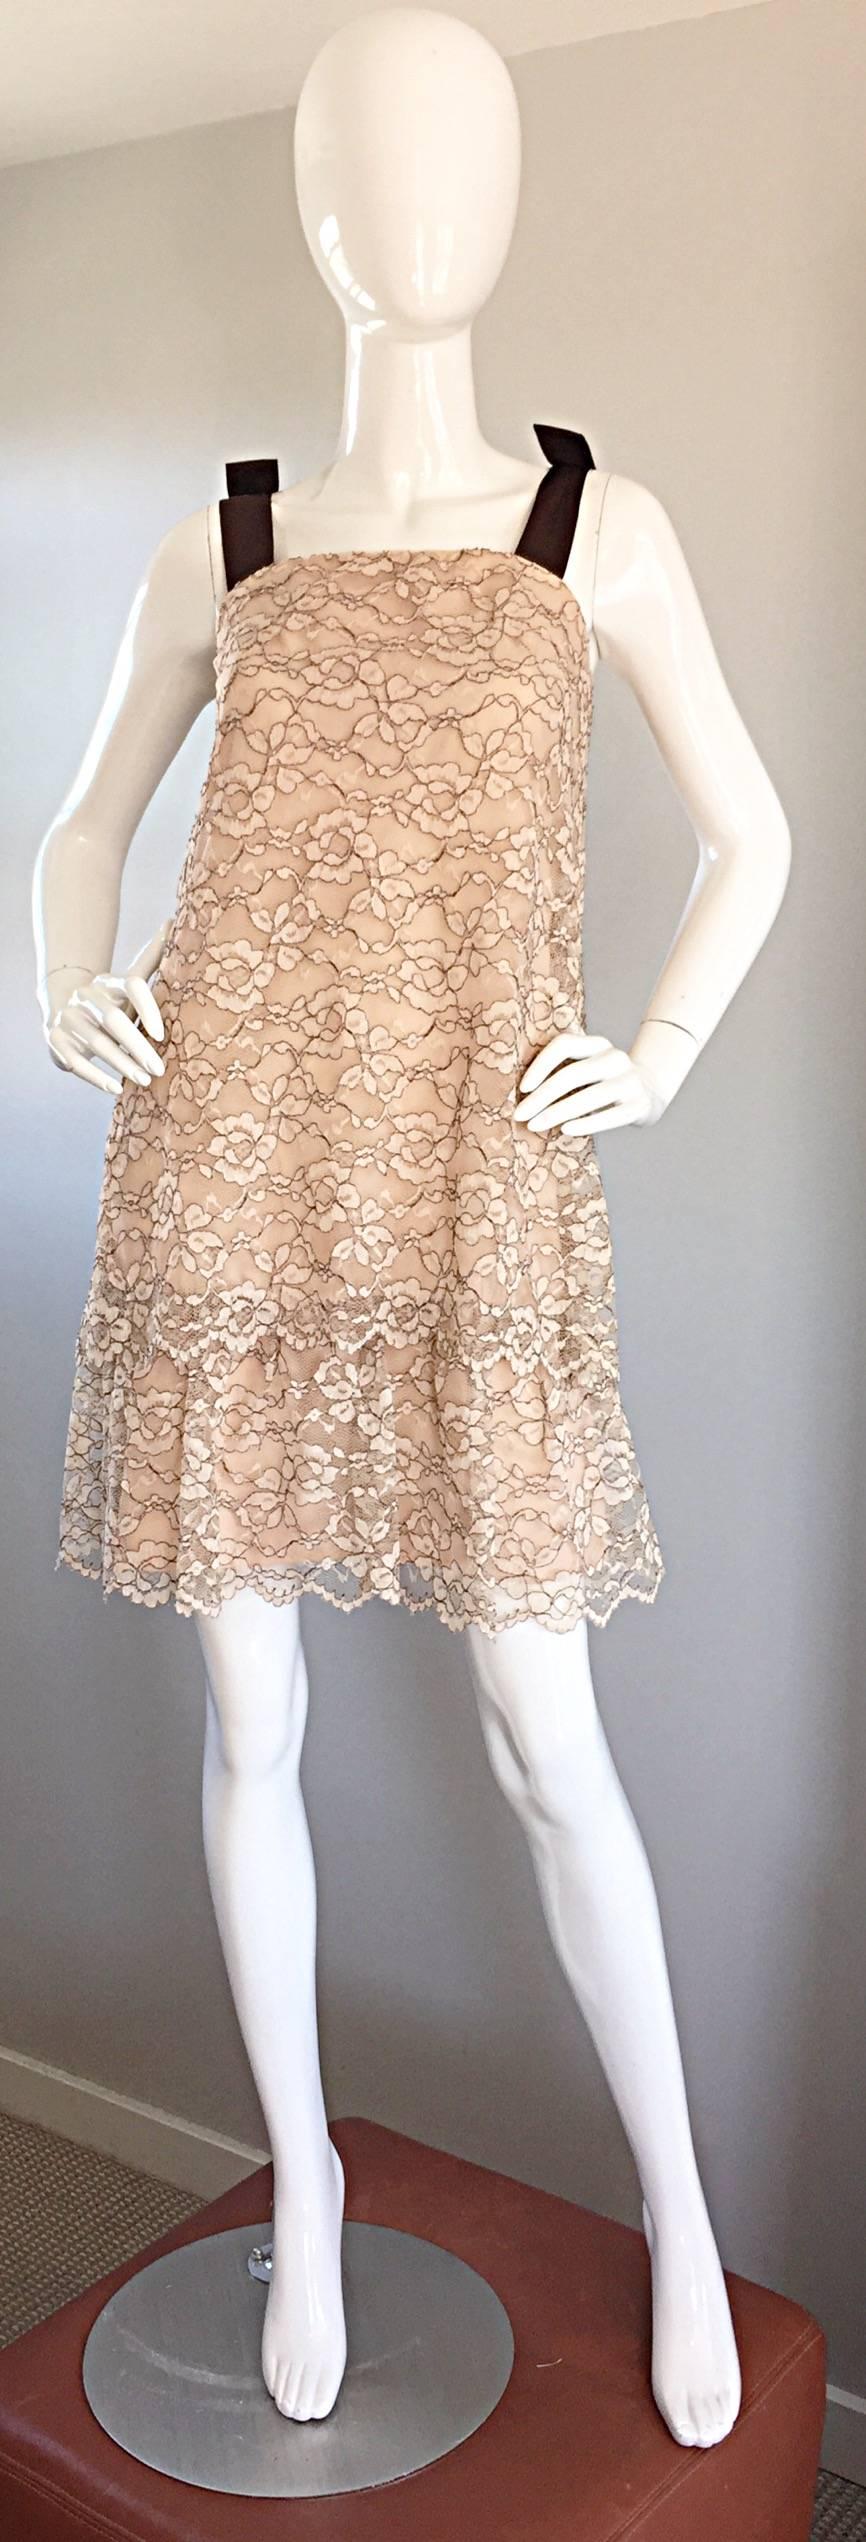 Magnifique robe ANN BARRY des années 60, en dentelle Chantilly taupe et marron, avec une ligne A étagée ! De chics bretelles de manches en ruban de soie marron, qui comportent un nœud sur chaque bretelle. Forme flatteuse, qui dissimule facilement